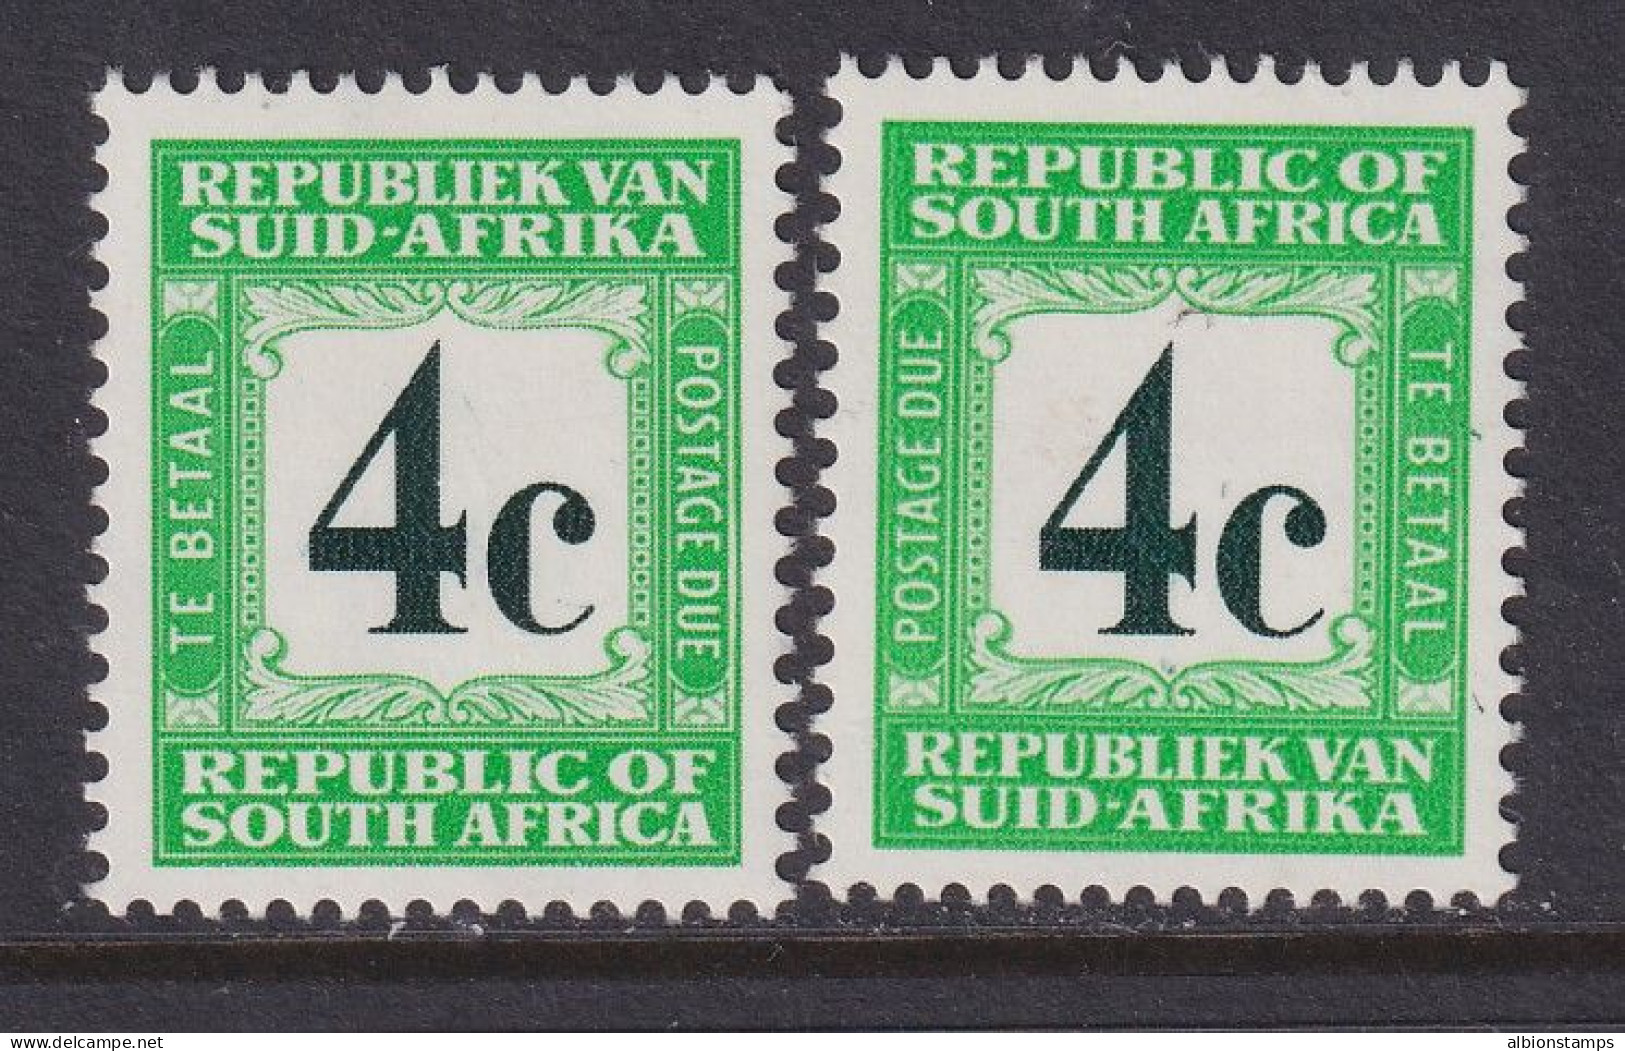 South Africa, Scott J63, J69 (SG D62b, D64), MLH - Portomarken